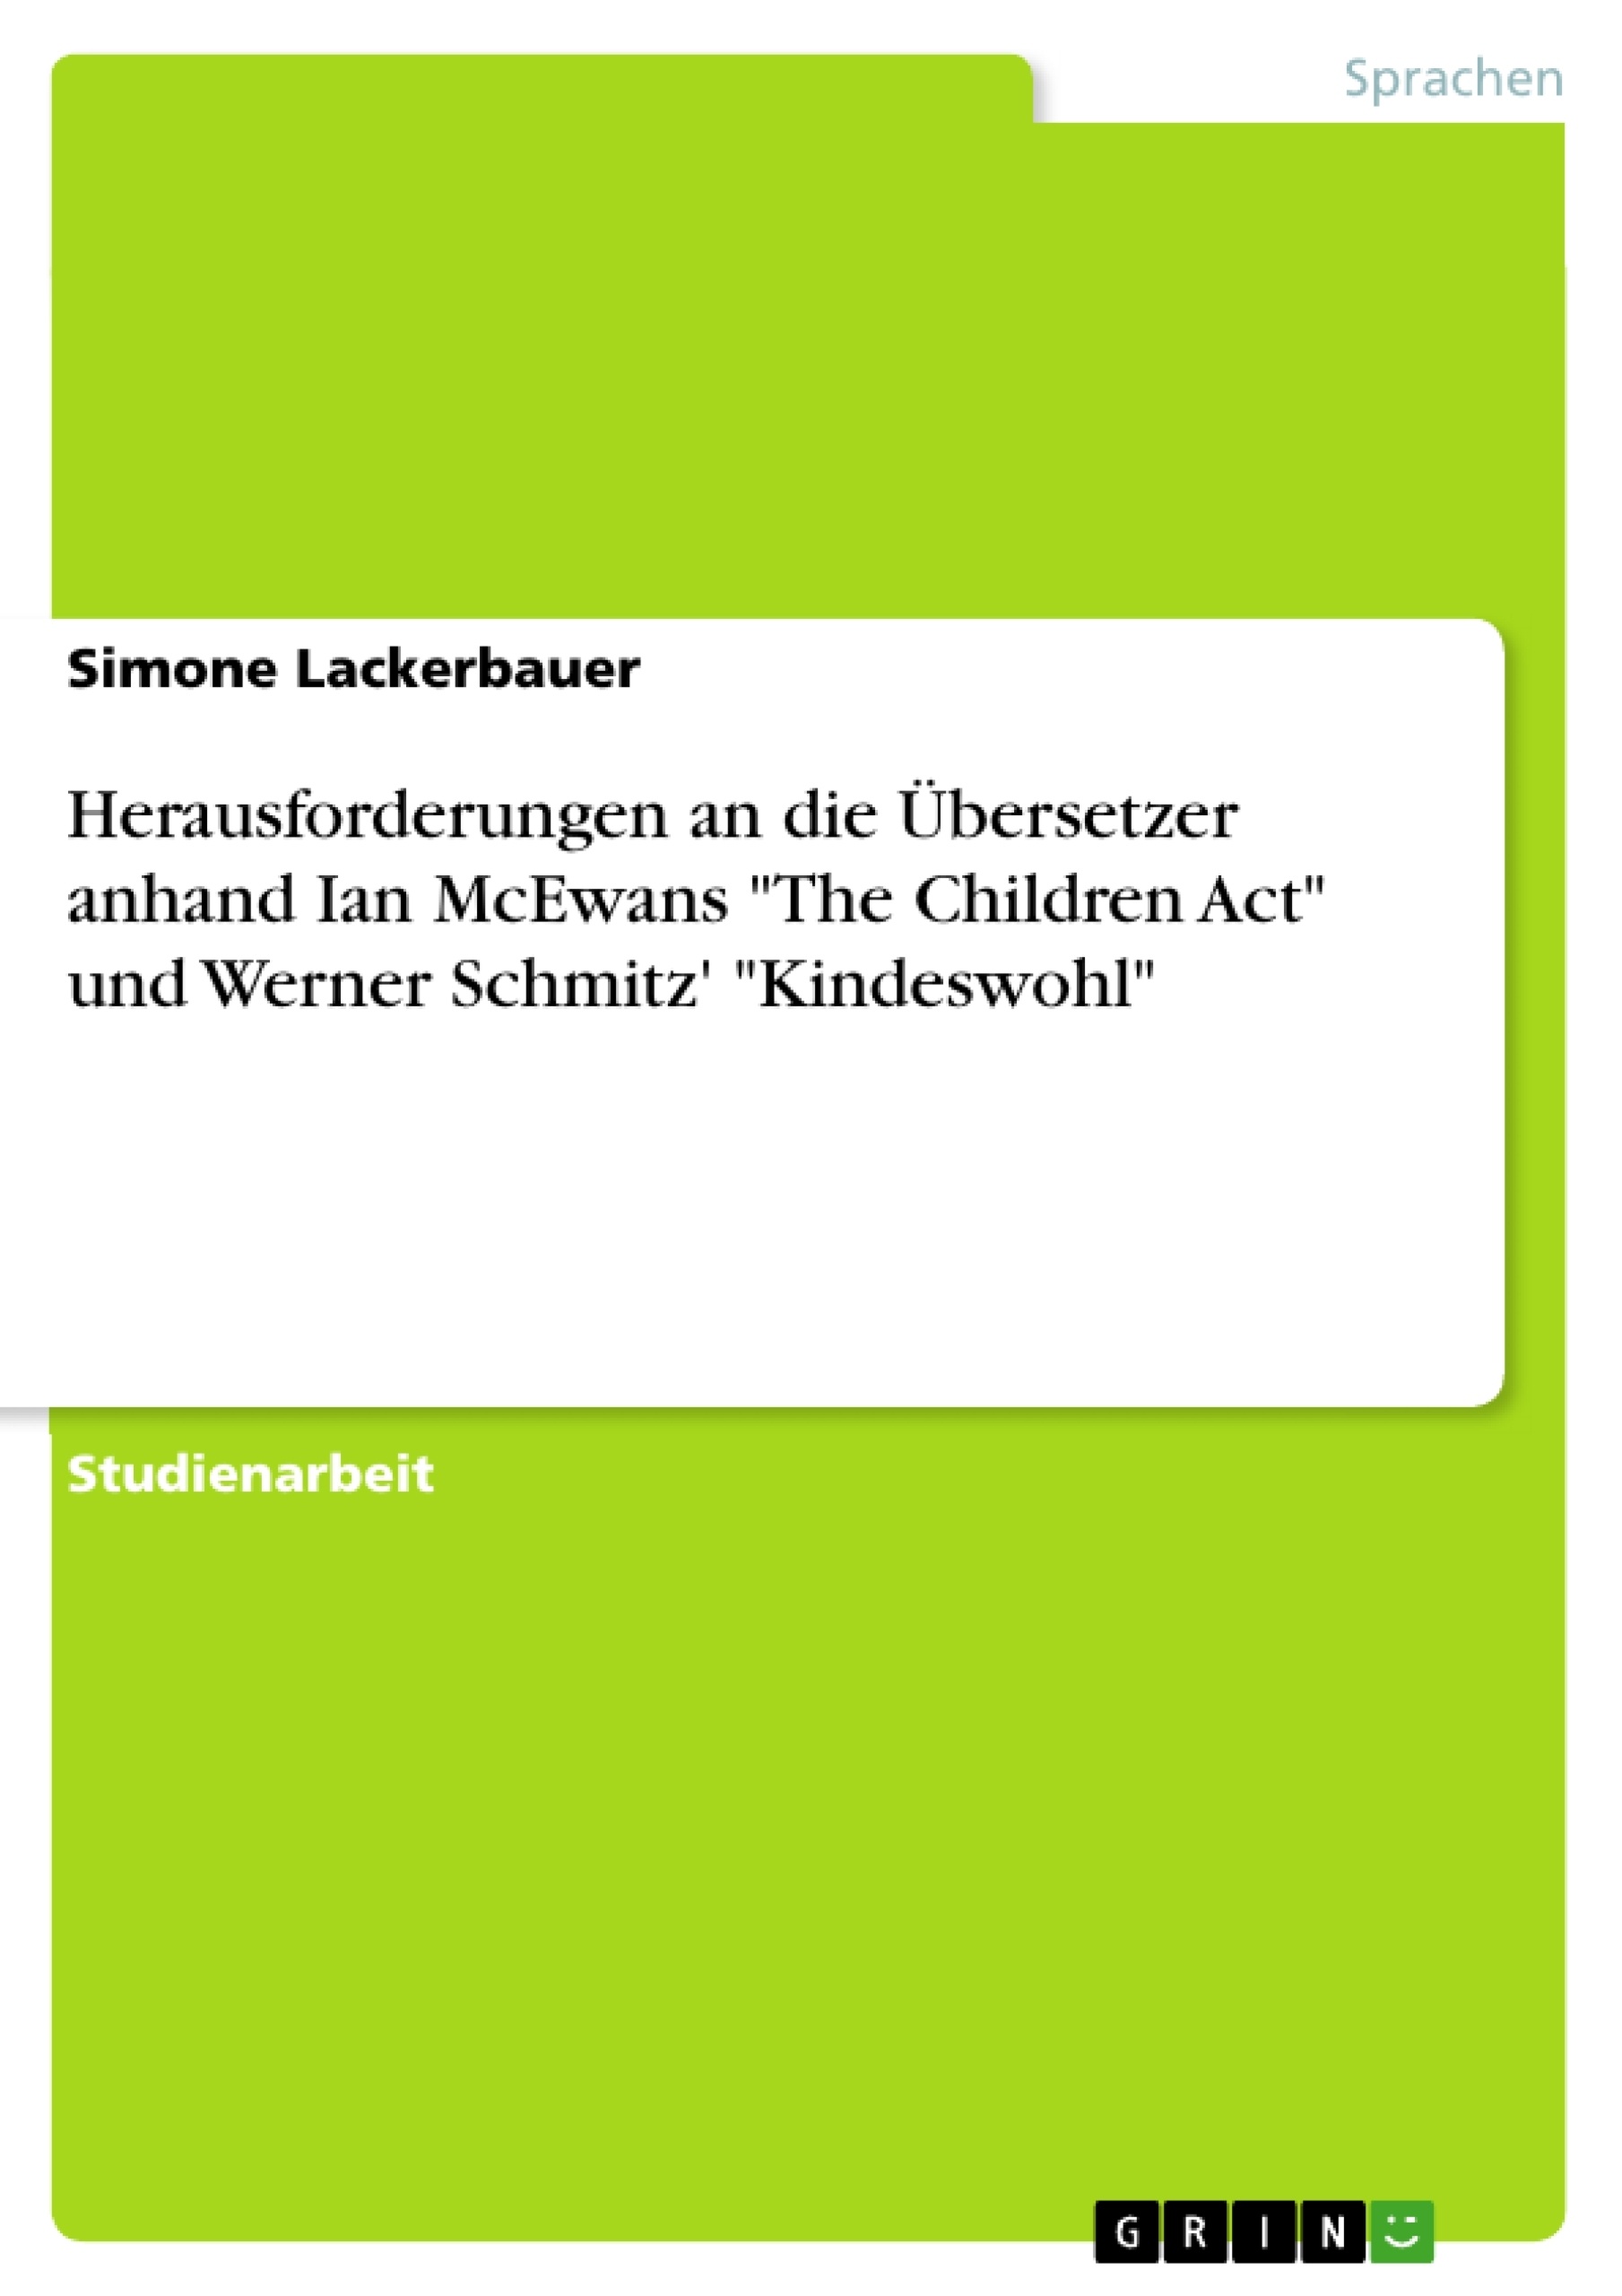 Título: Herausforderungen an die Übersetzer anhand Ian McEwans "The Children Act" und Werner Schmitz' "Kindeswohl"